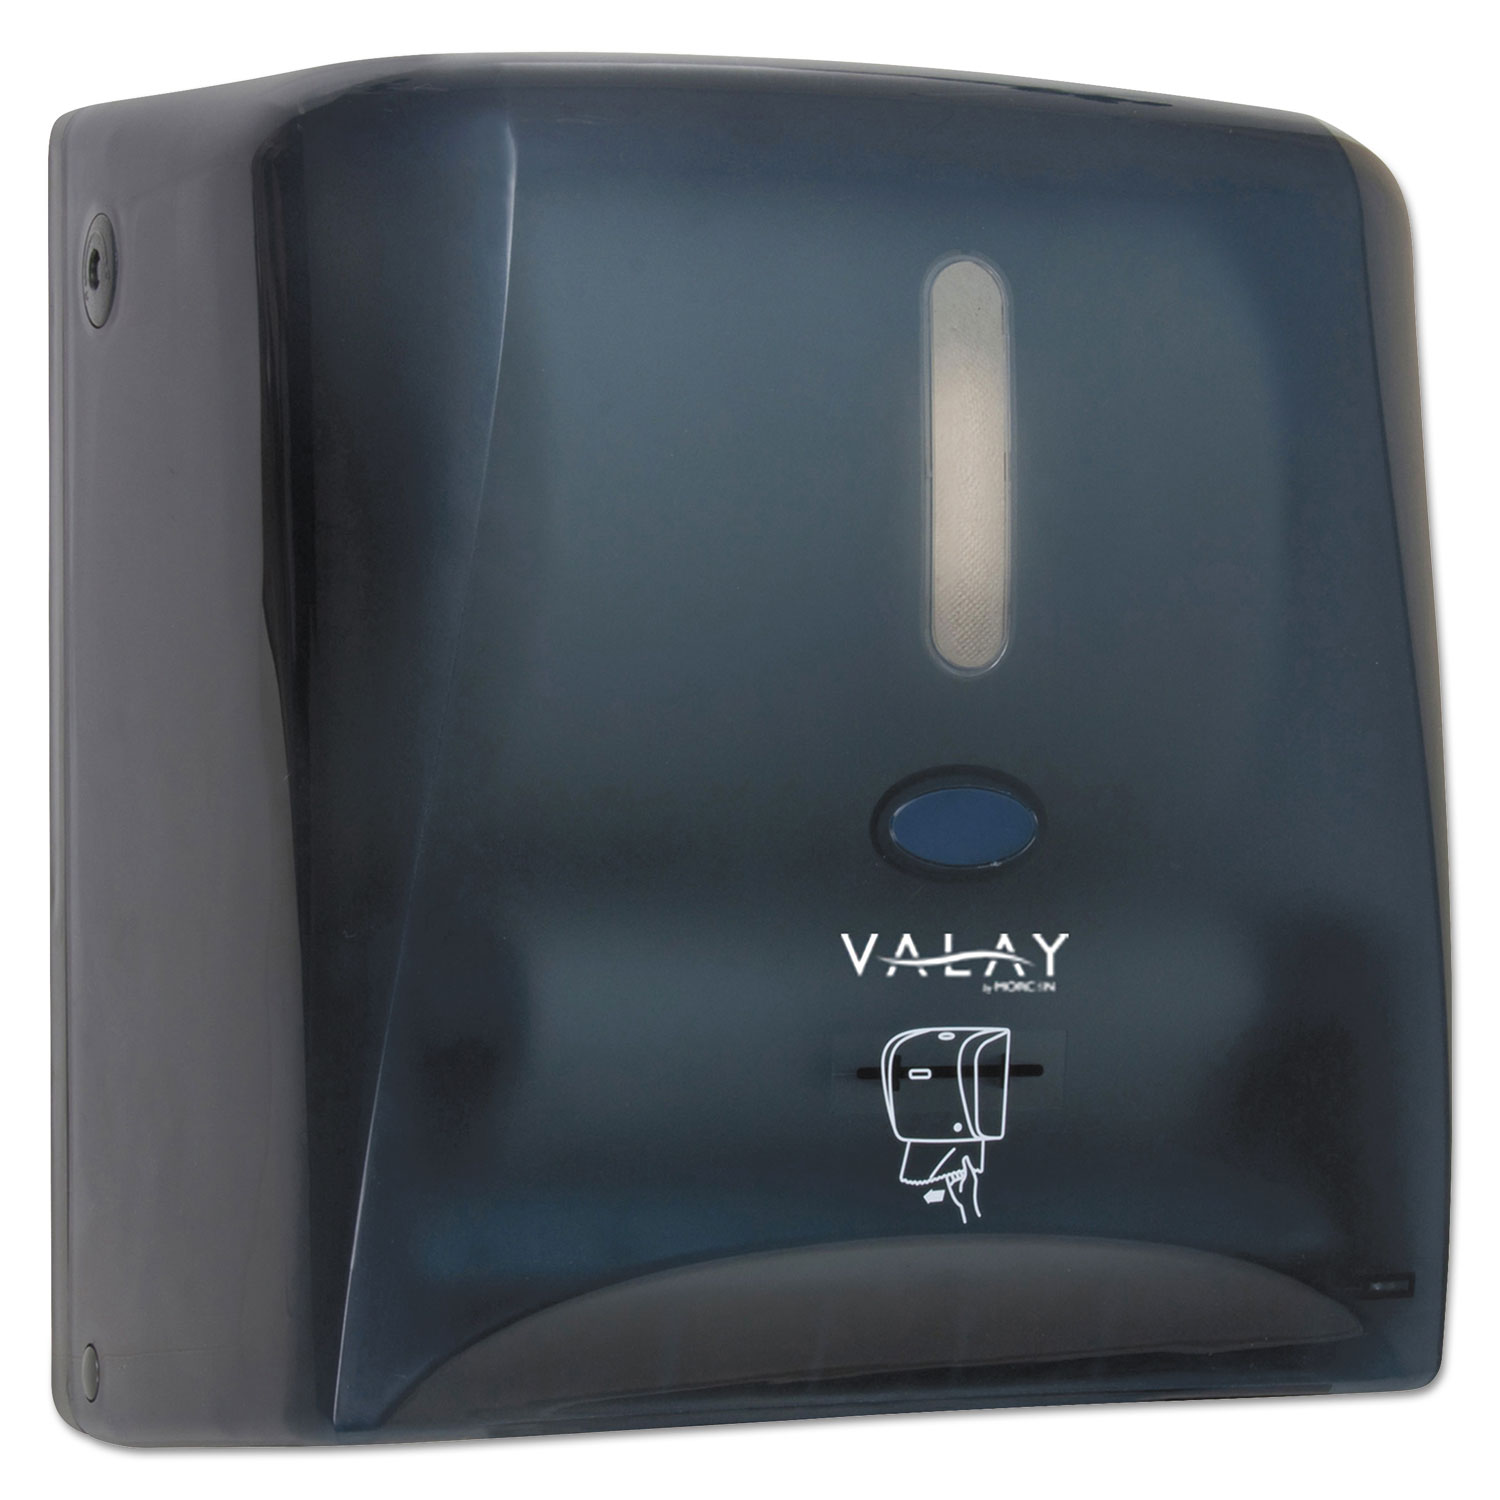  Morcon Tissue VT1010 Valay 10 Inch Roll Towel Dispenser , 13 1/4 x 14 1/4 x 9, Black (MORVT1010) 